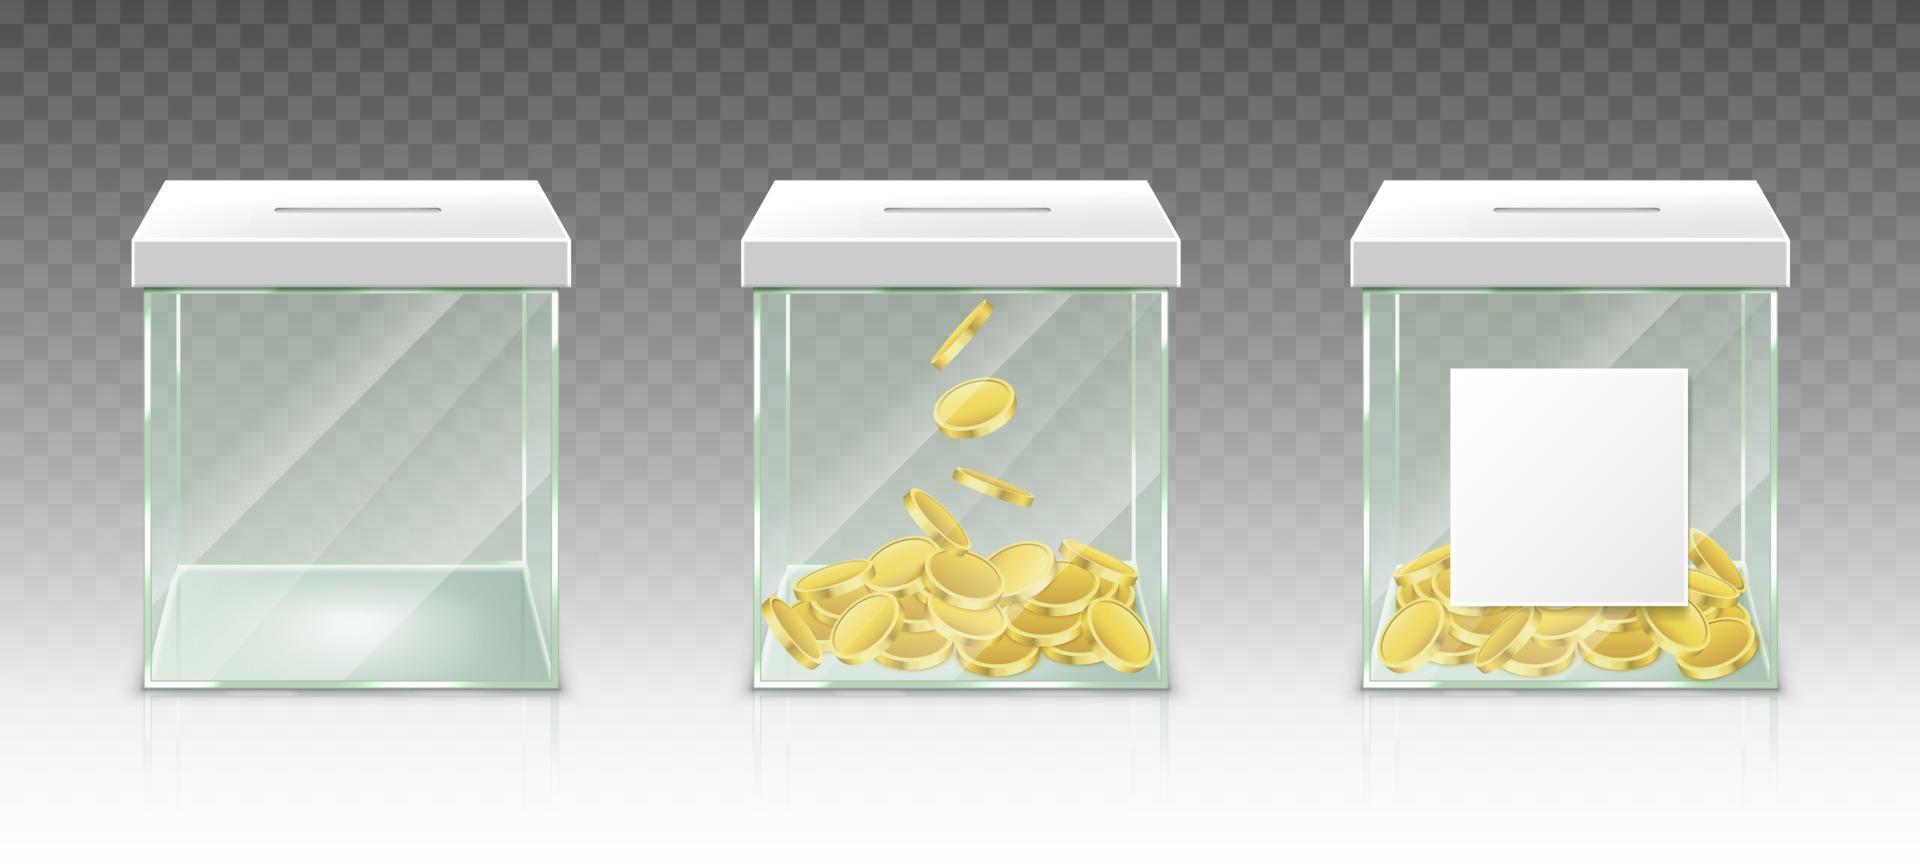 caja de dinero de vidrio para propinas, ahorros o donaciones vector